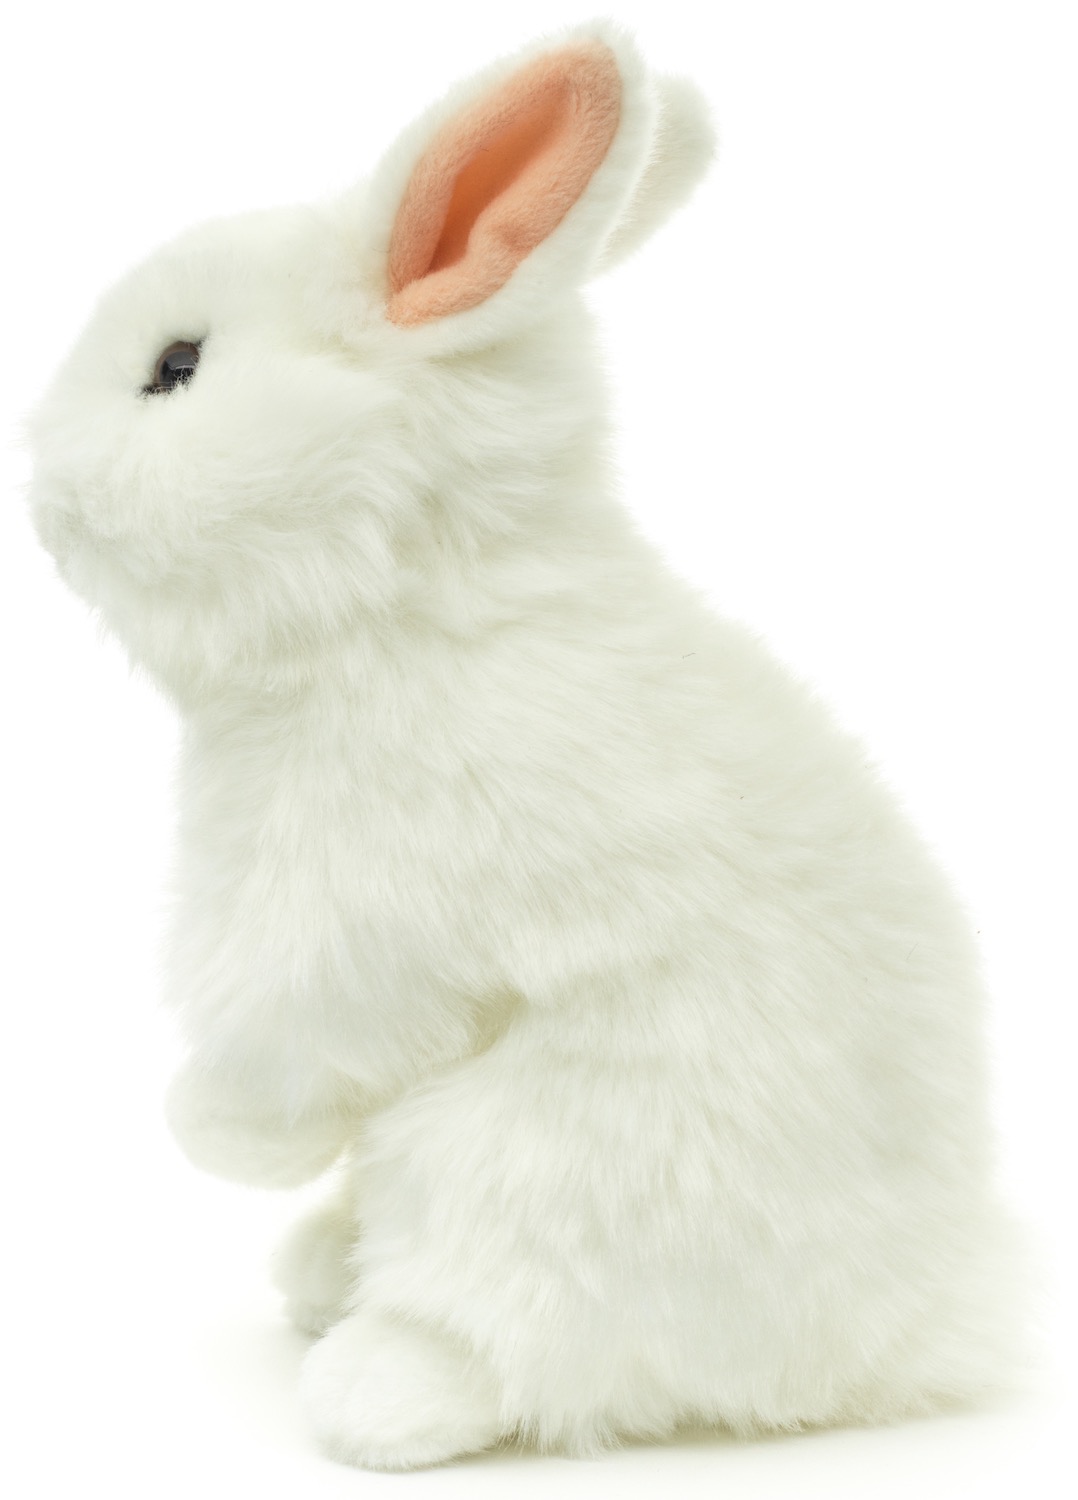 Löwenkopf-Kaninchen, stehend (weiß) - Mit aufgestellten Ohren  - 23 cm (Höhe)